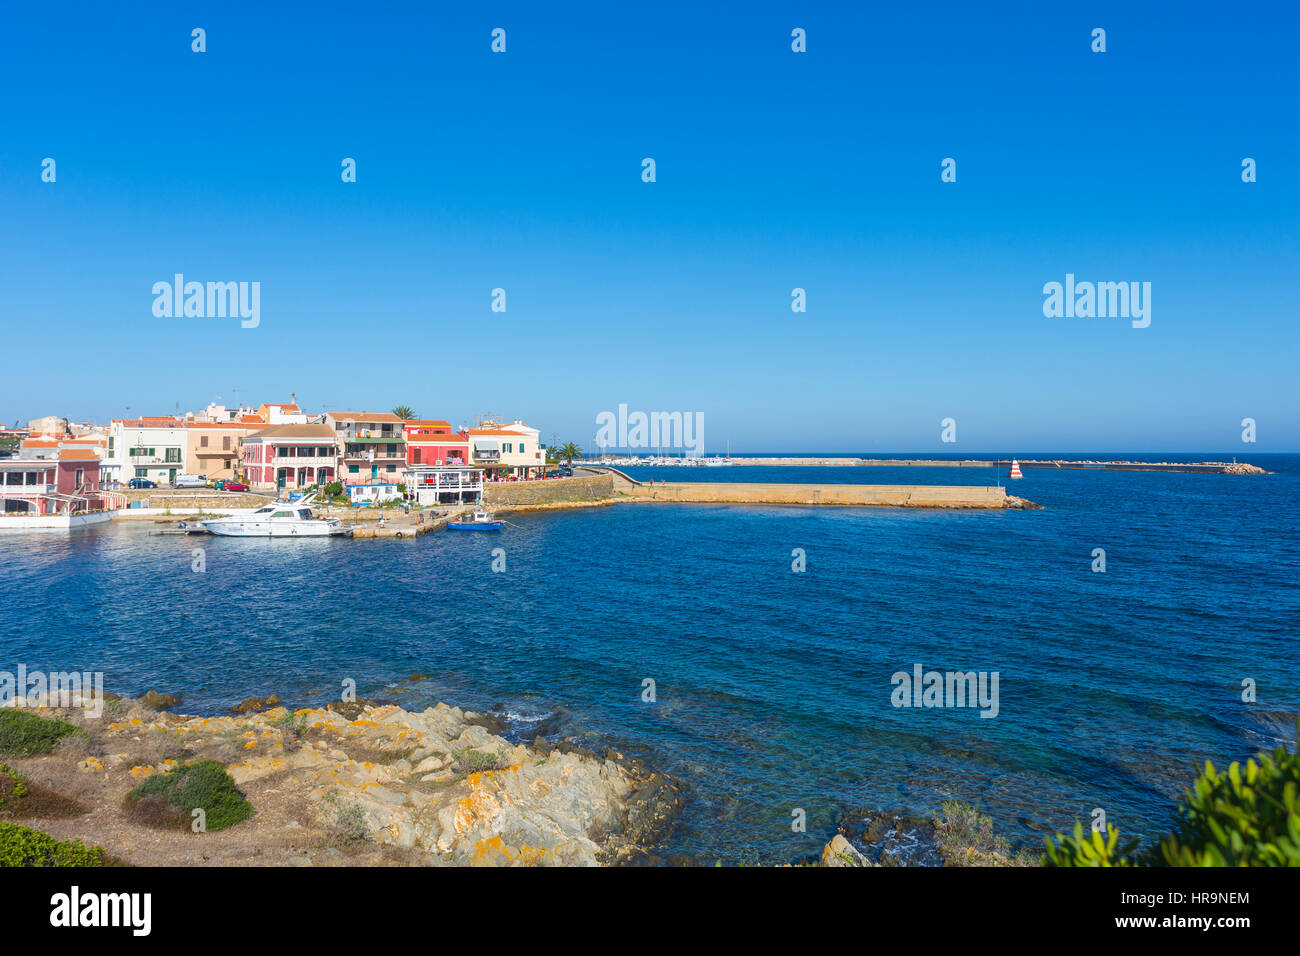 View of Stintino Village, Sassari Asinara Gulf, Sardinia, Italy Stock Photo